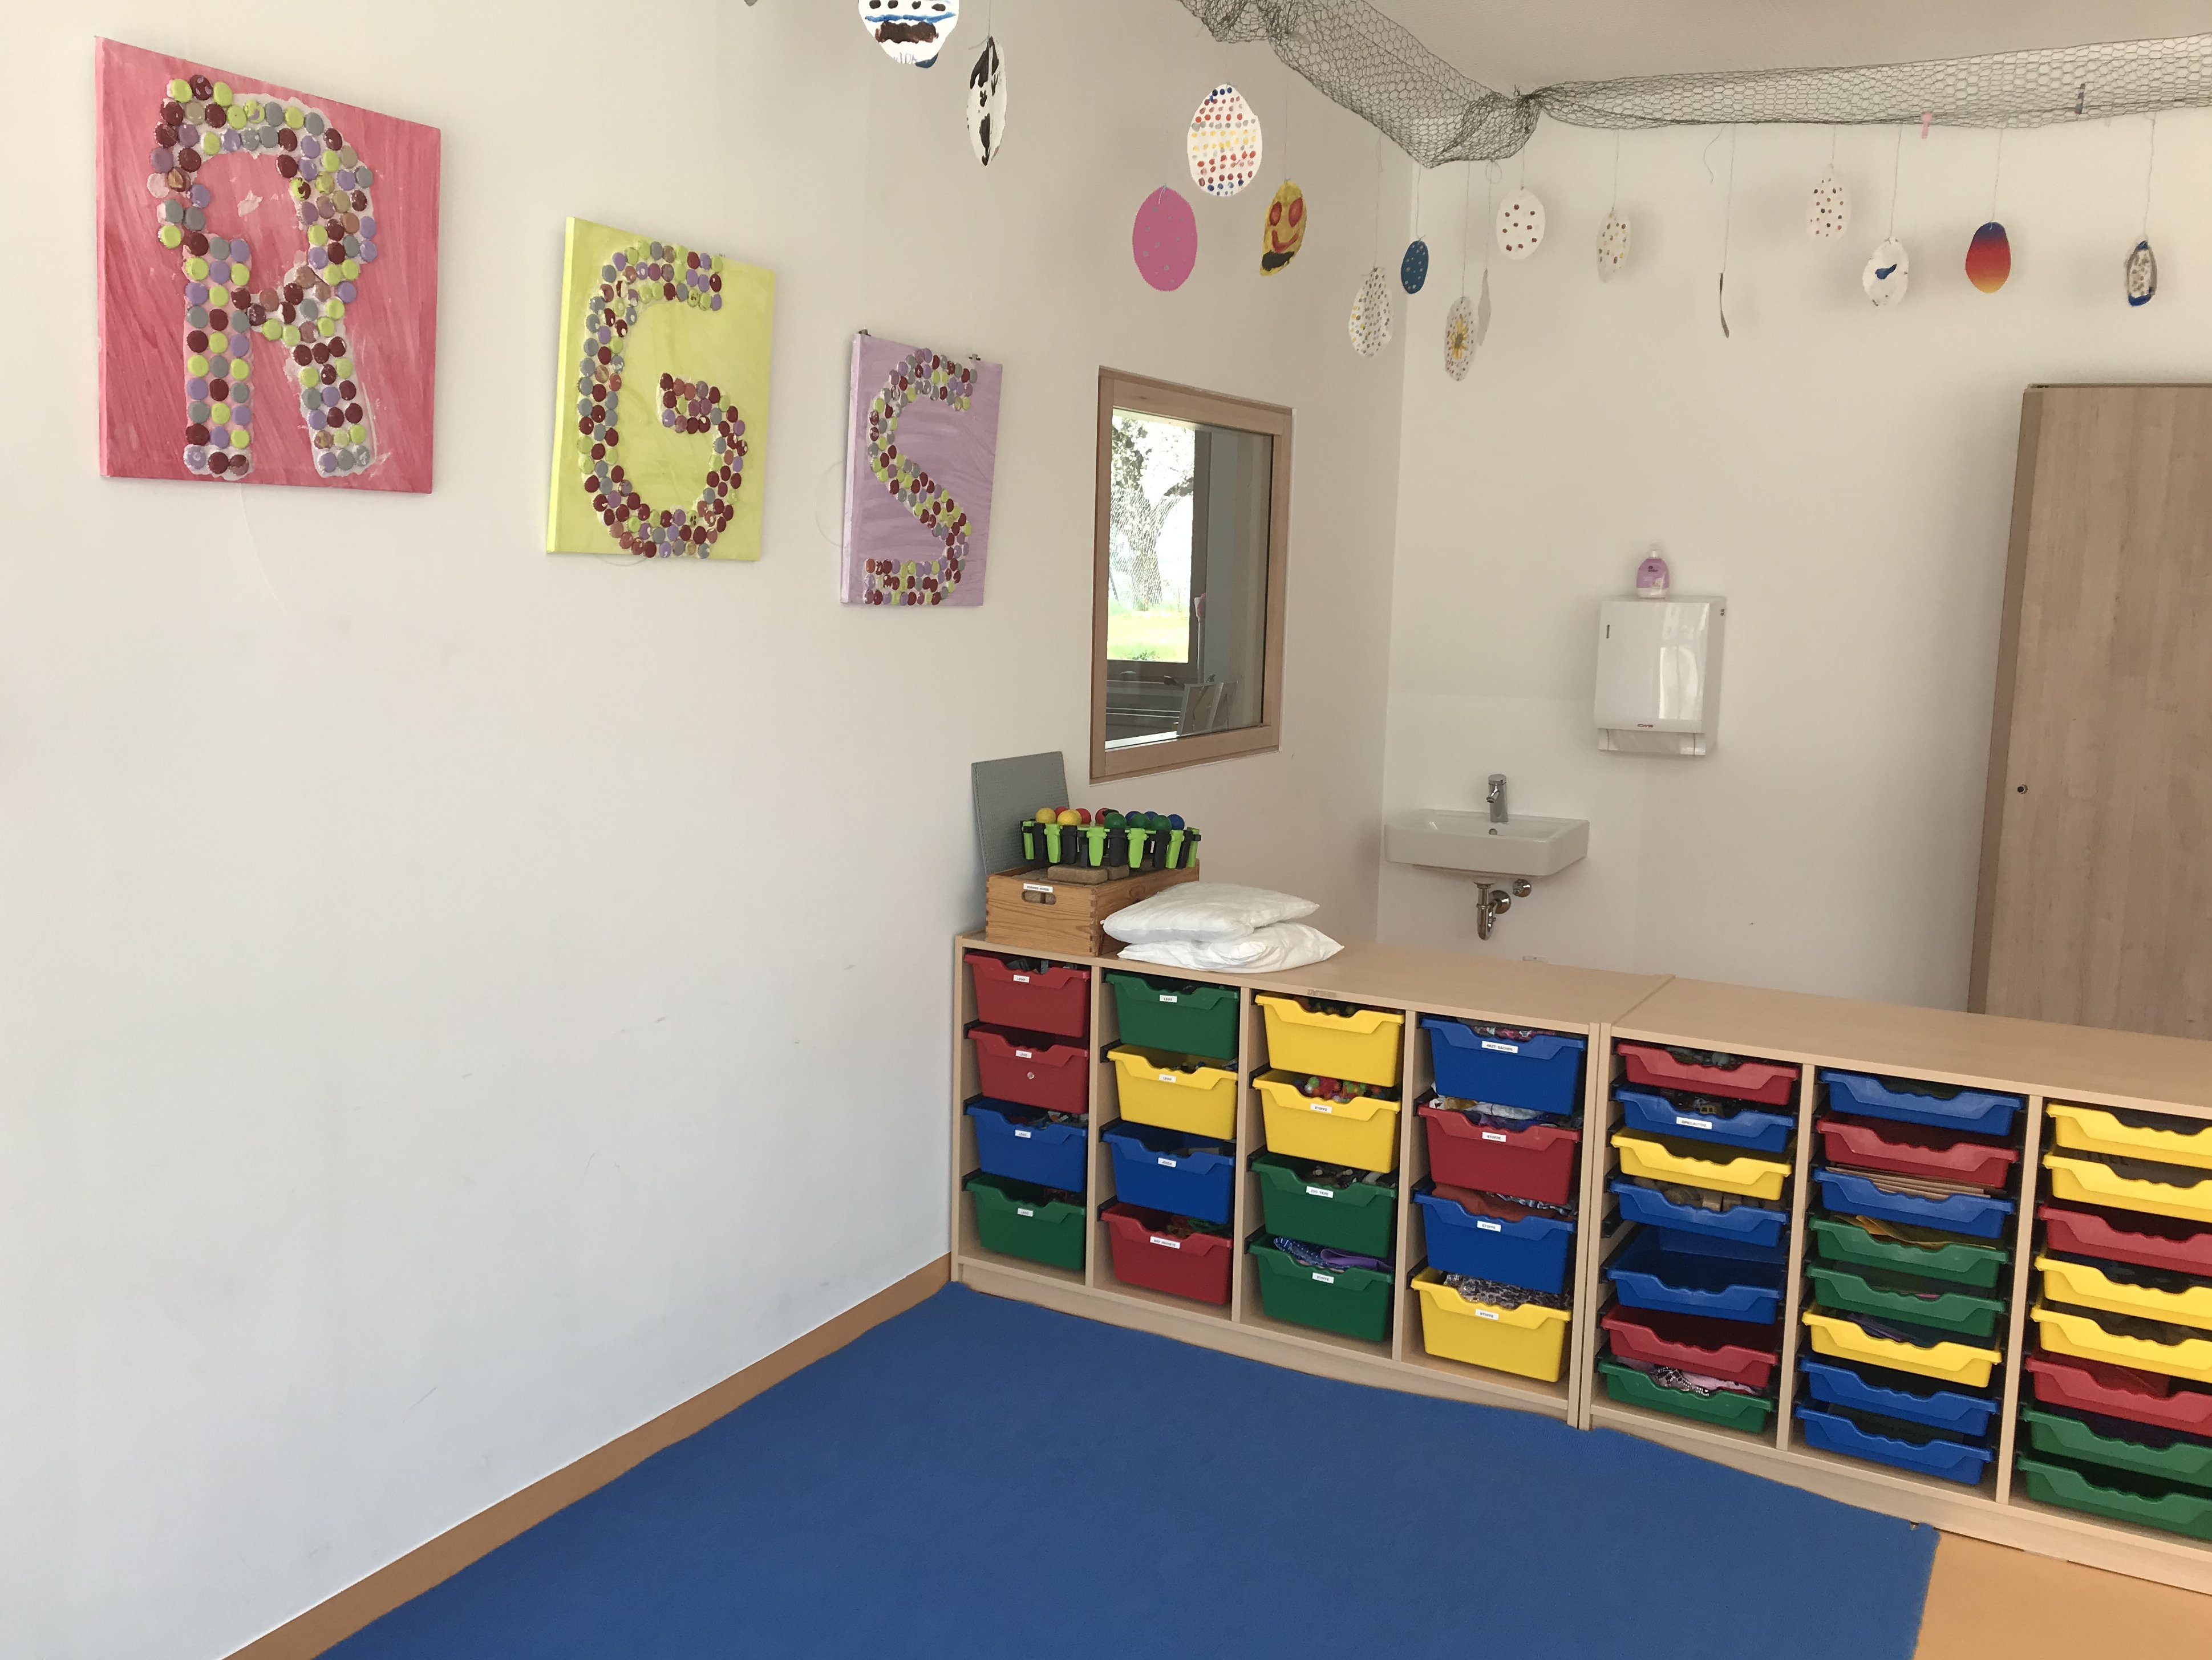 Blick in Betreuungsraum der Rosenbach-Grundschule mit bunte Bilder an weissen Wänden, mit verschiedenfarbigen Ordnungsregalen für Bastelbedarf und blauer Spielmatte auf dem Boden